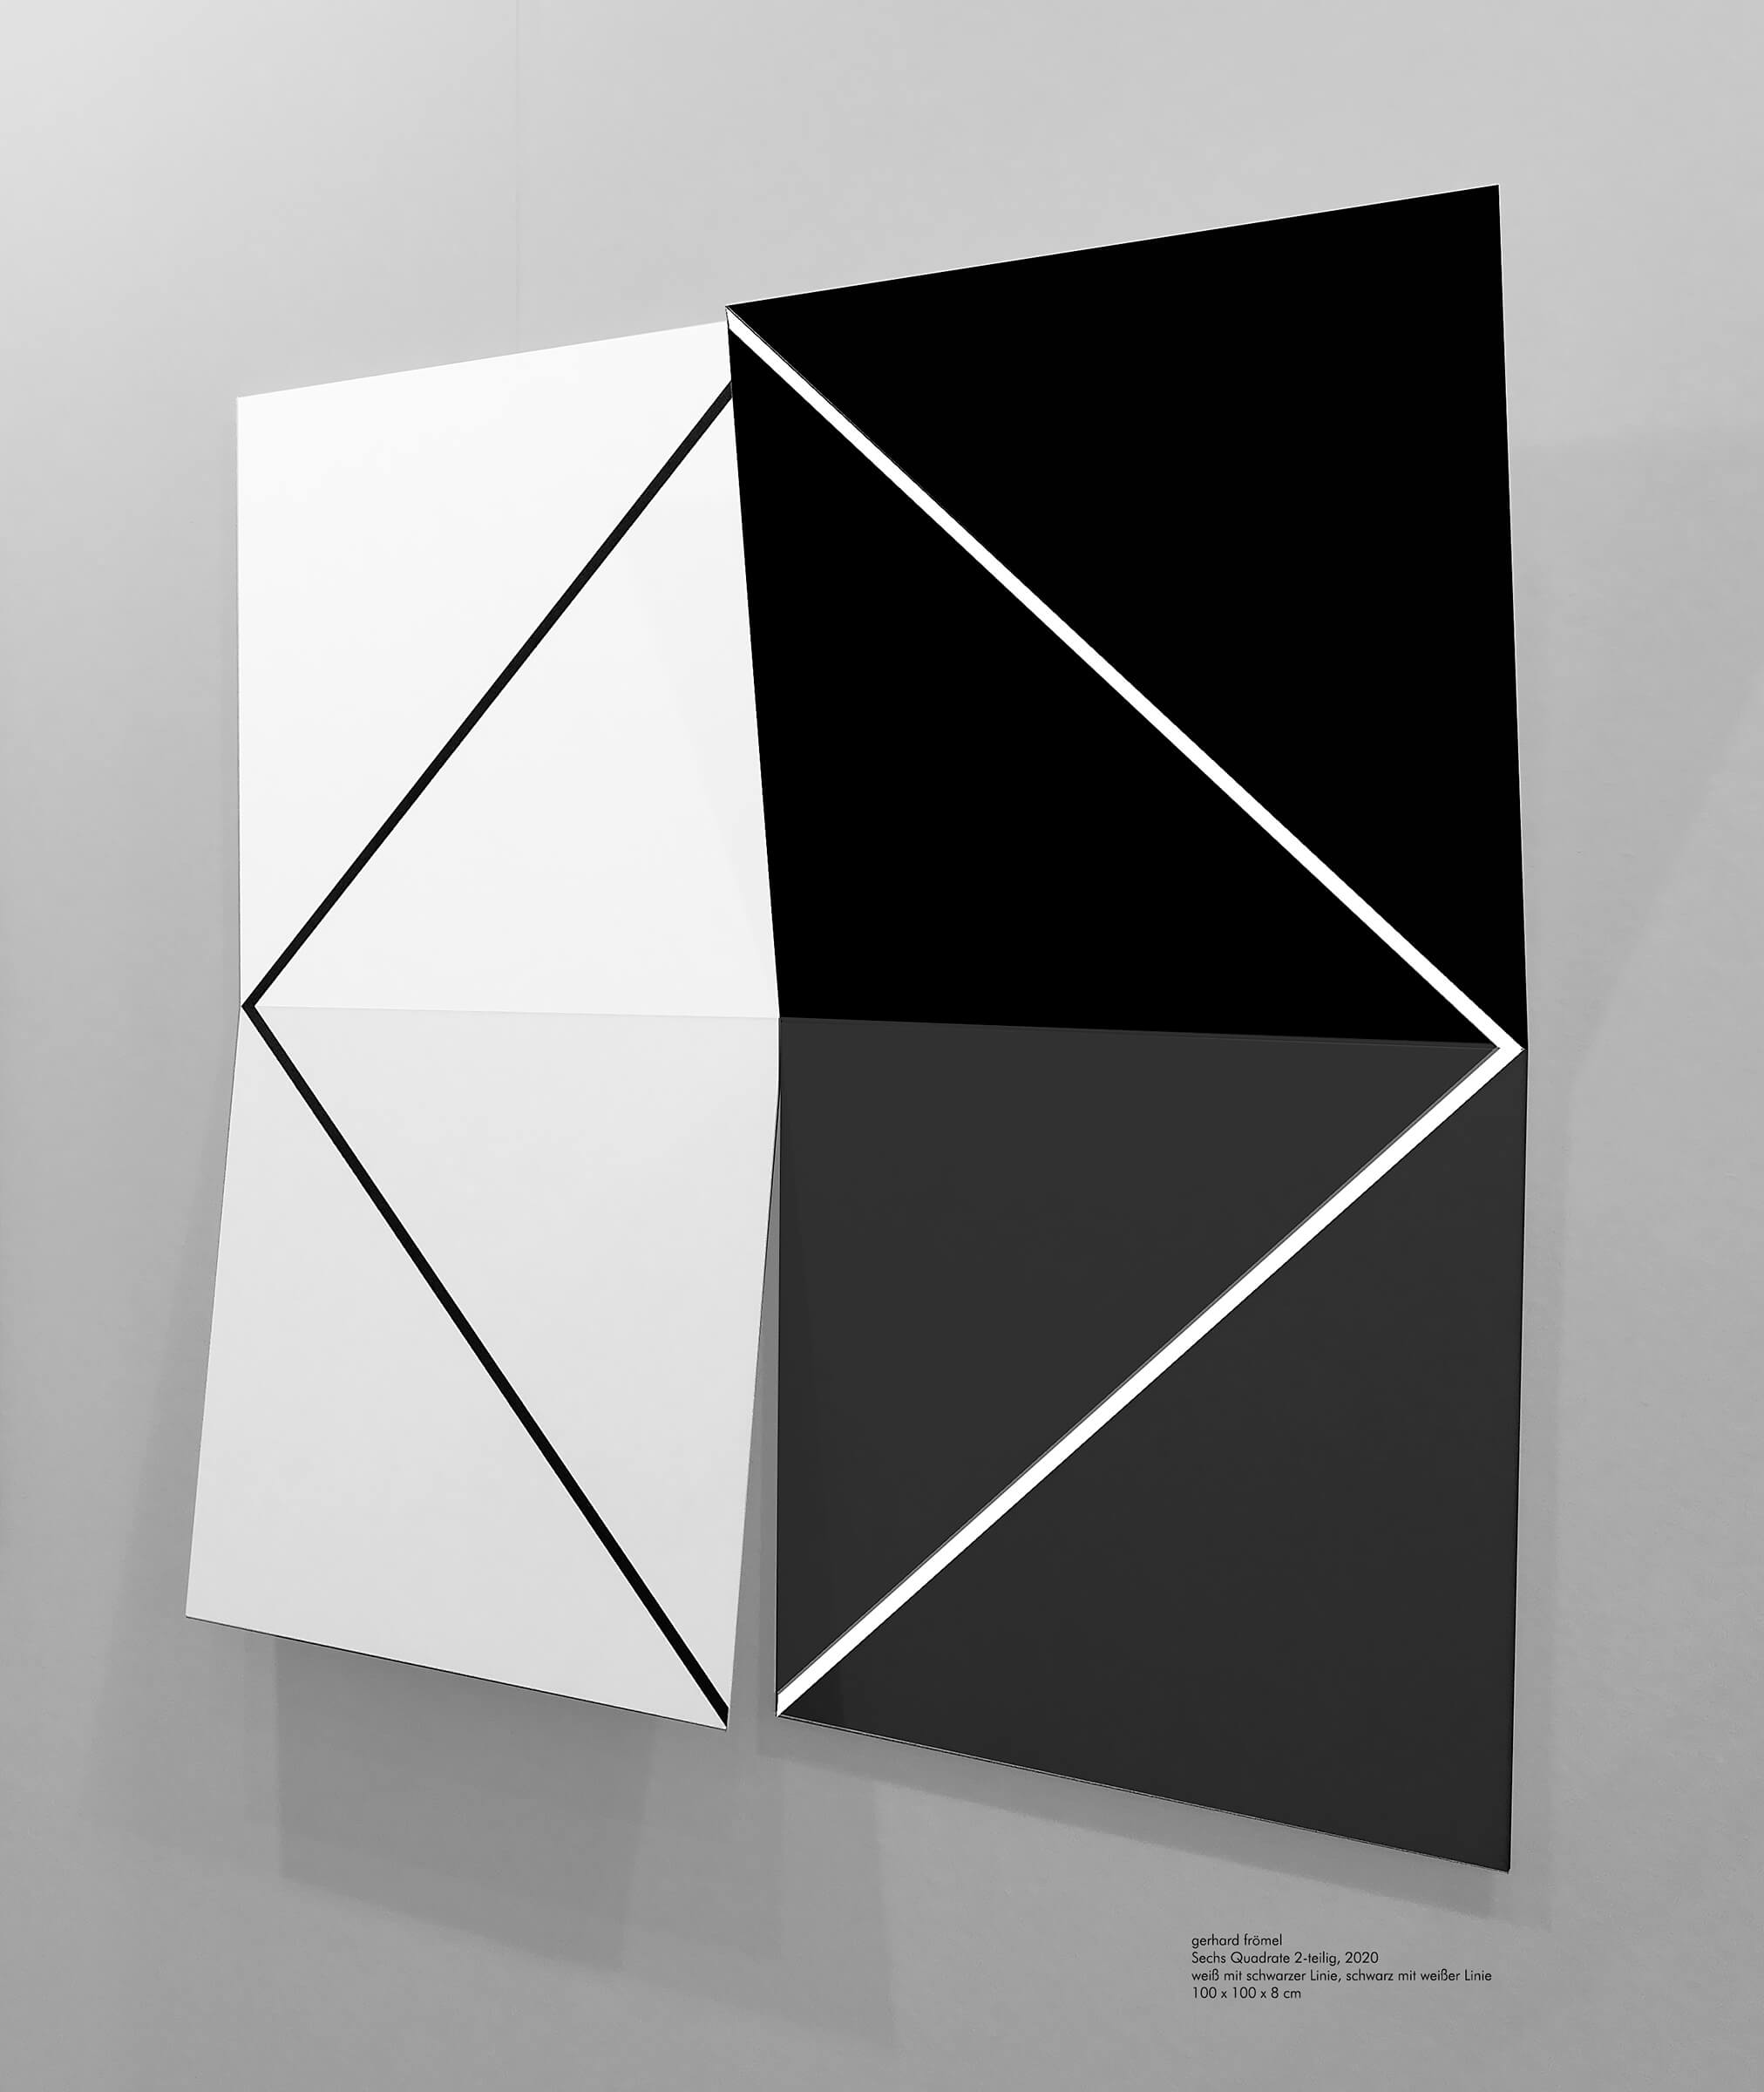 Sechs Quadrate 2-teilig 2020, weiß mit schwarzer Linie, schwarz mit weißer Linie, Aluminium, Acryllack, Gesamtmaß: 100 x 100 x 8 cm